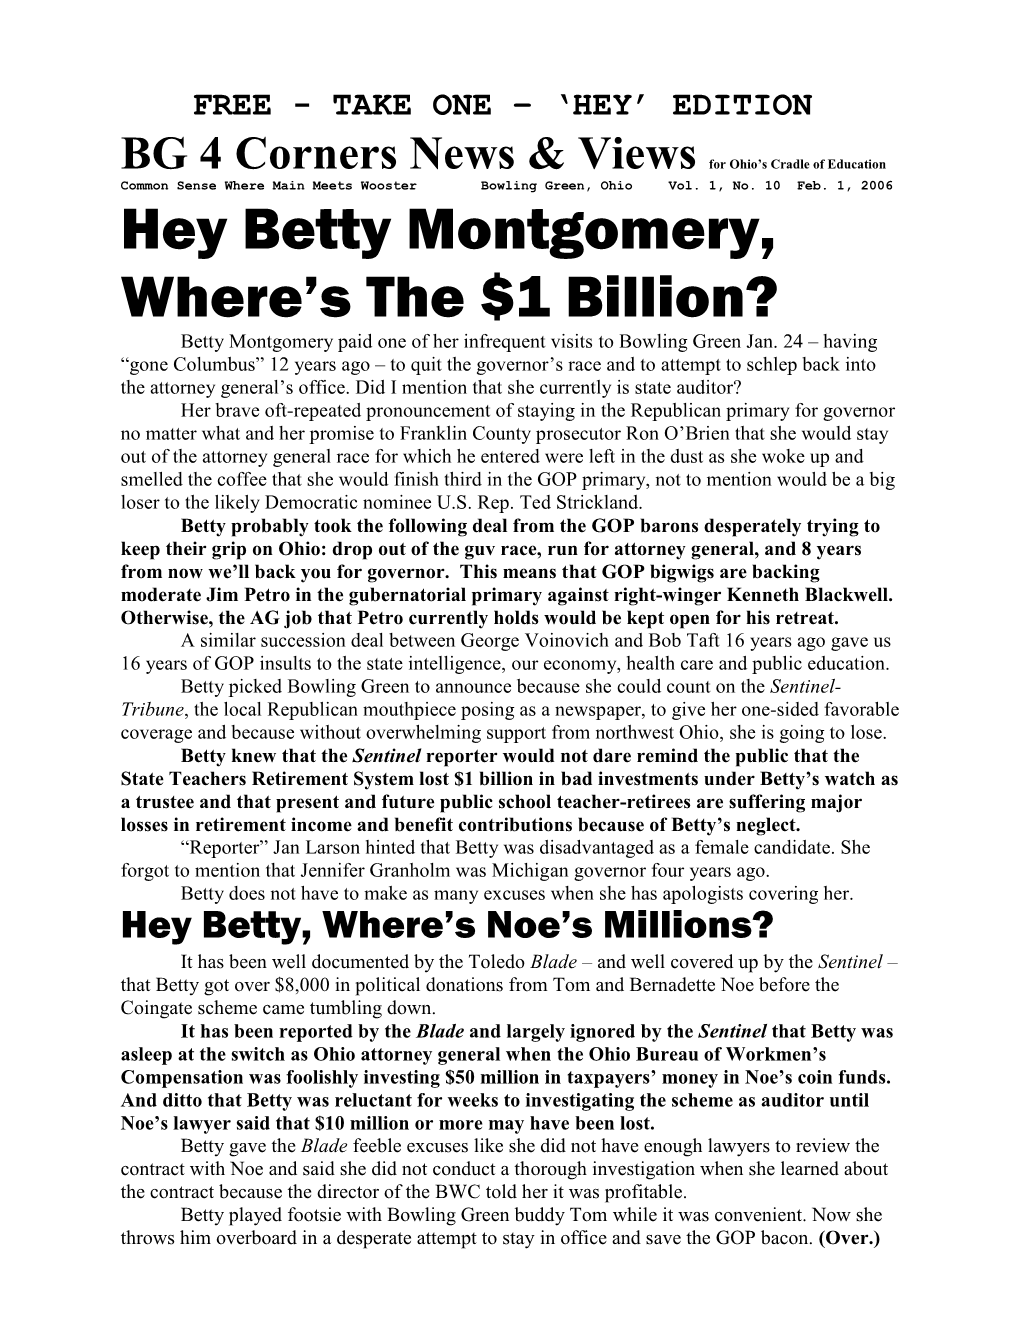 Hey Betty Montgomery, Where's the $1 Billion?